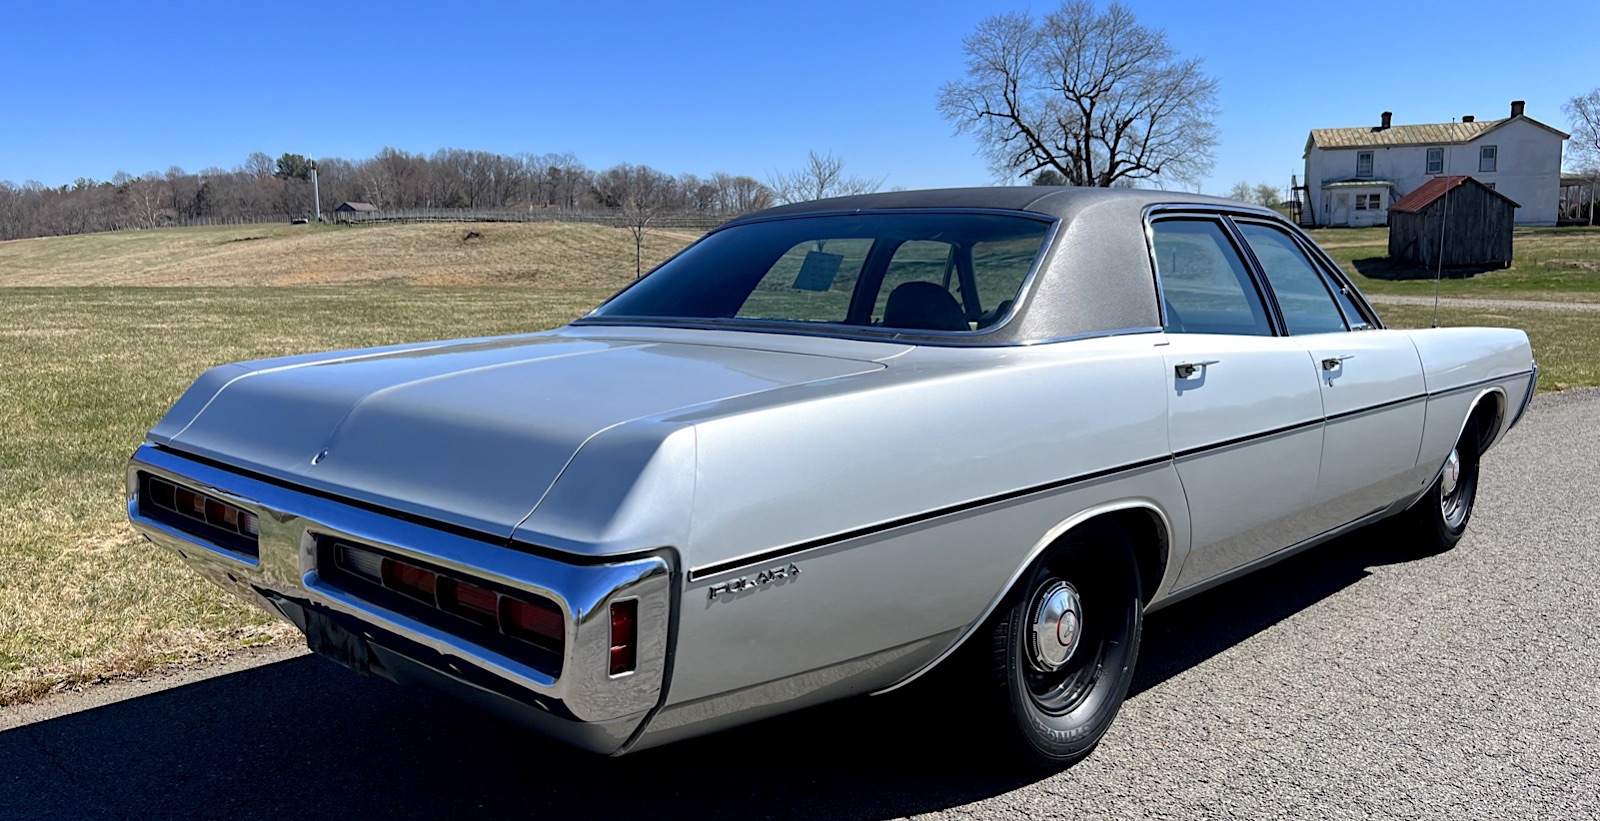 1970 Dodge Polara - right rear profile